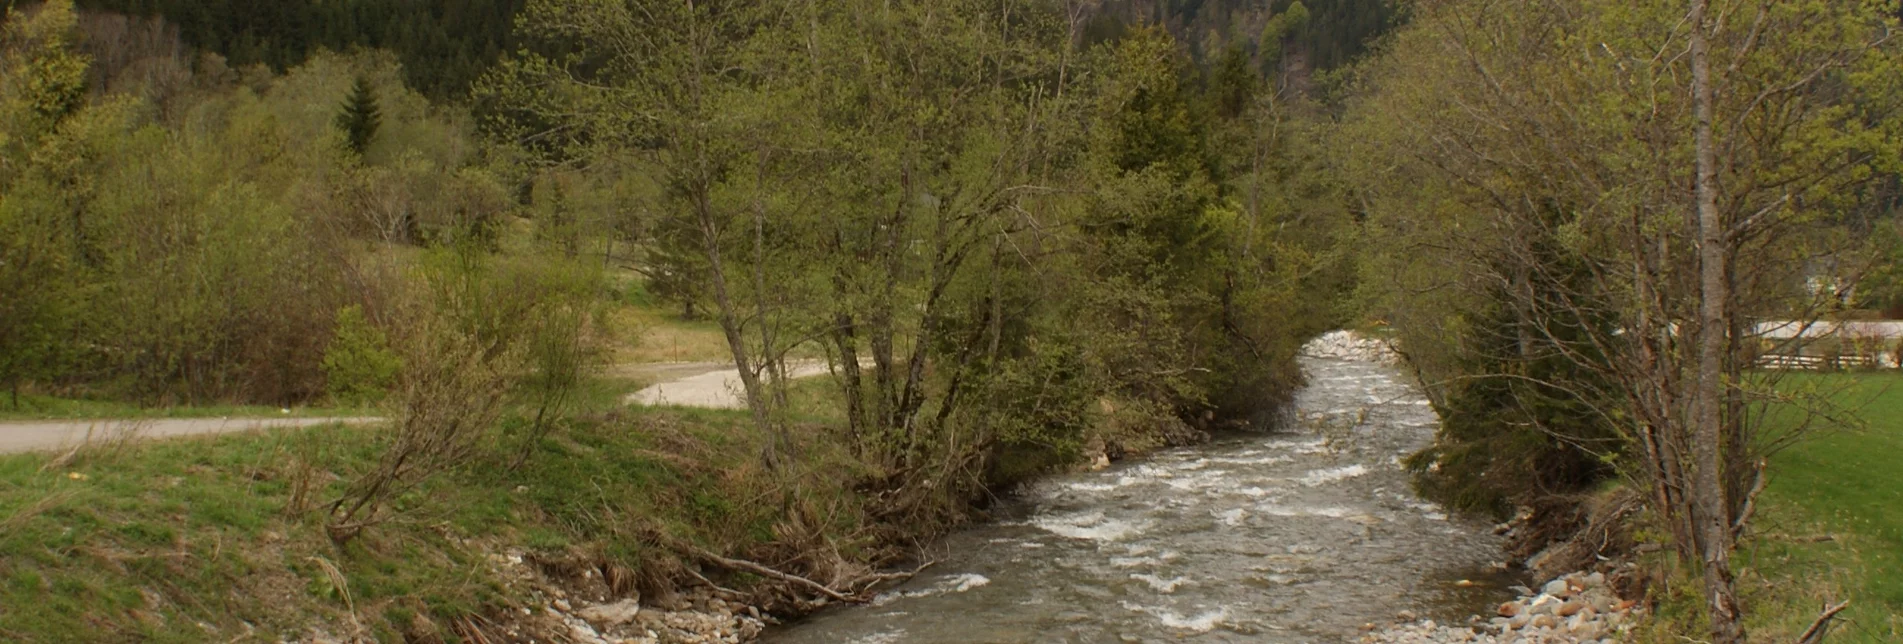 Wasserwege Runde am Bach - Touren-Impression #1 | © Erlebnisregion Schladming-Dachstein